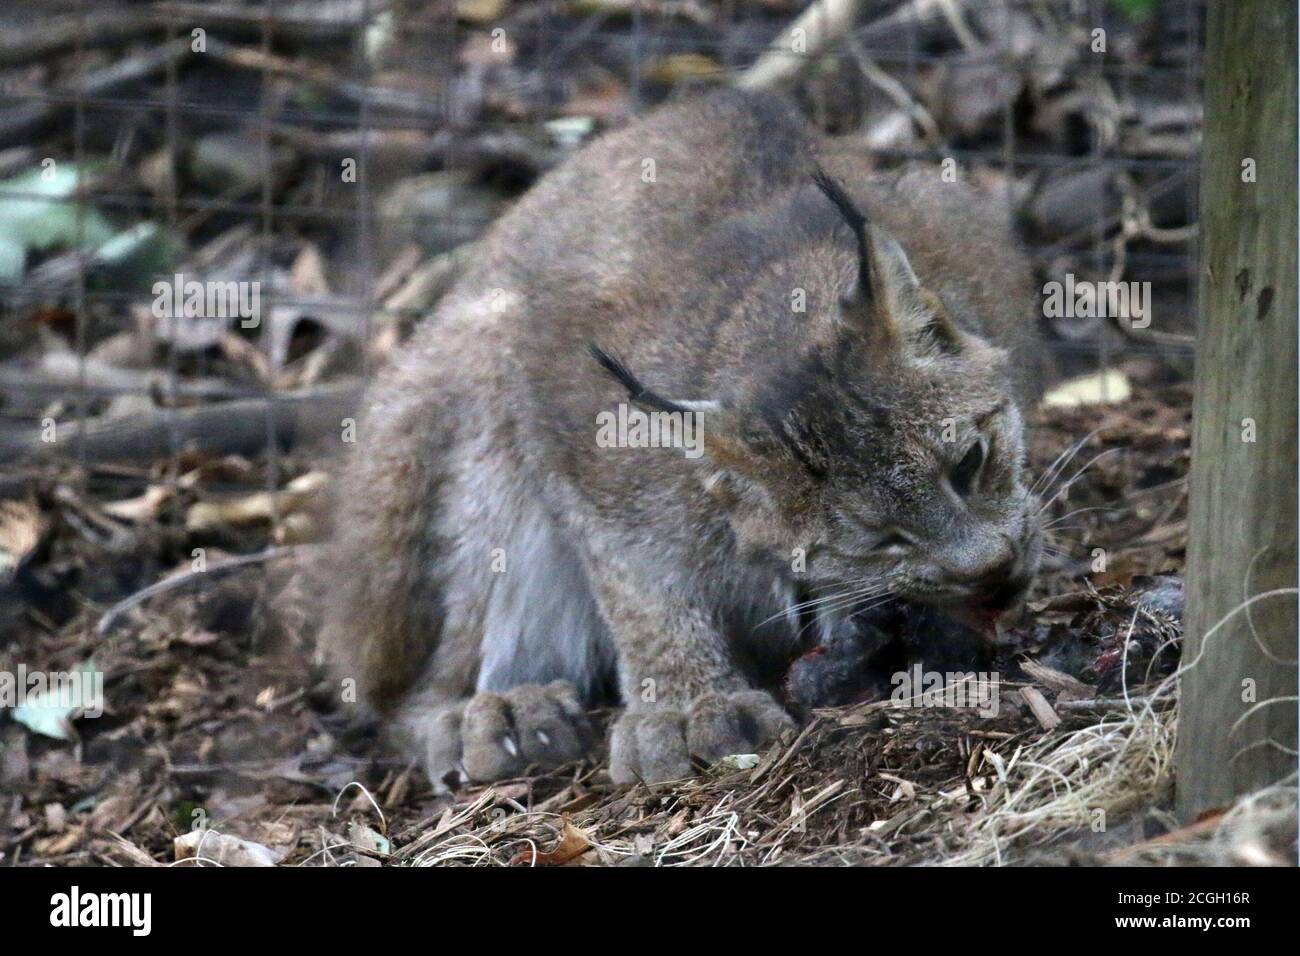 Bobcat feeding on small mammal Stock Photo